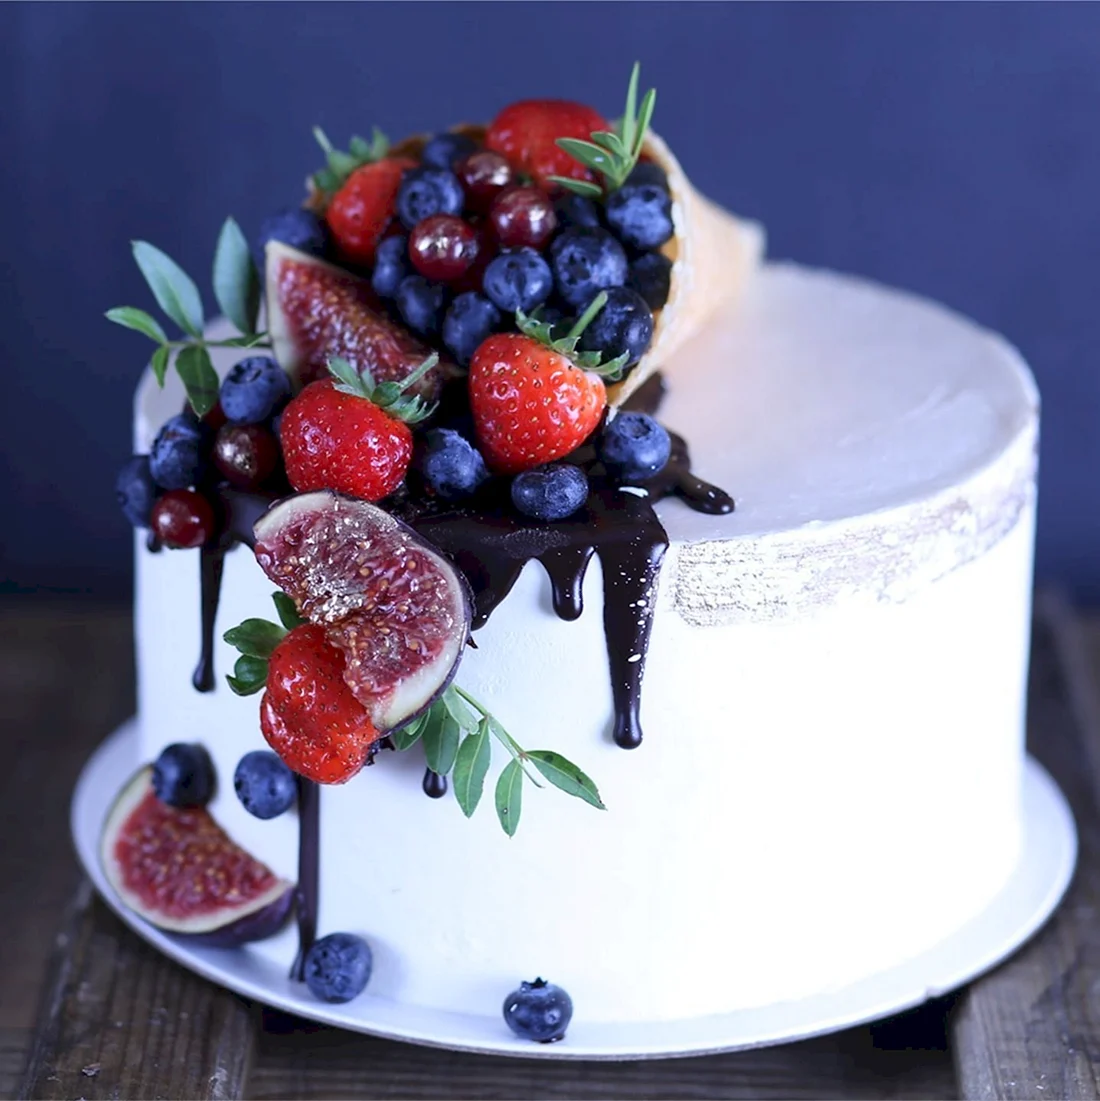 Украшение торта свежими ягодами